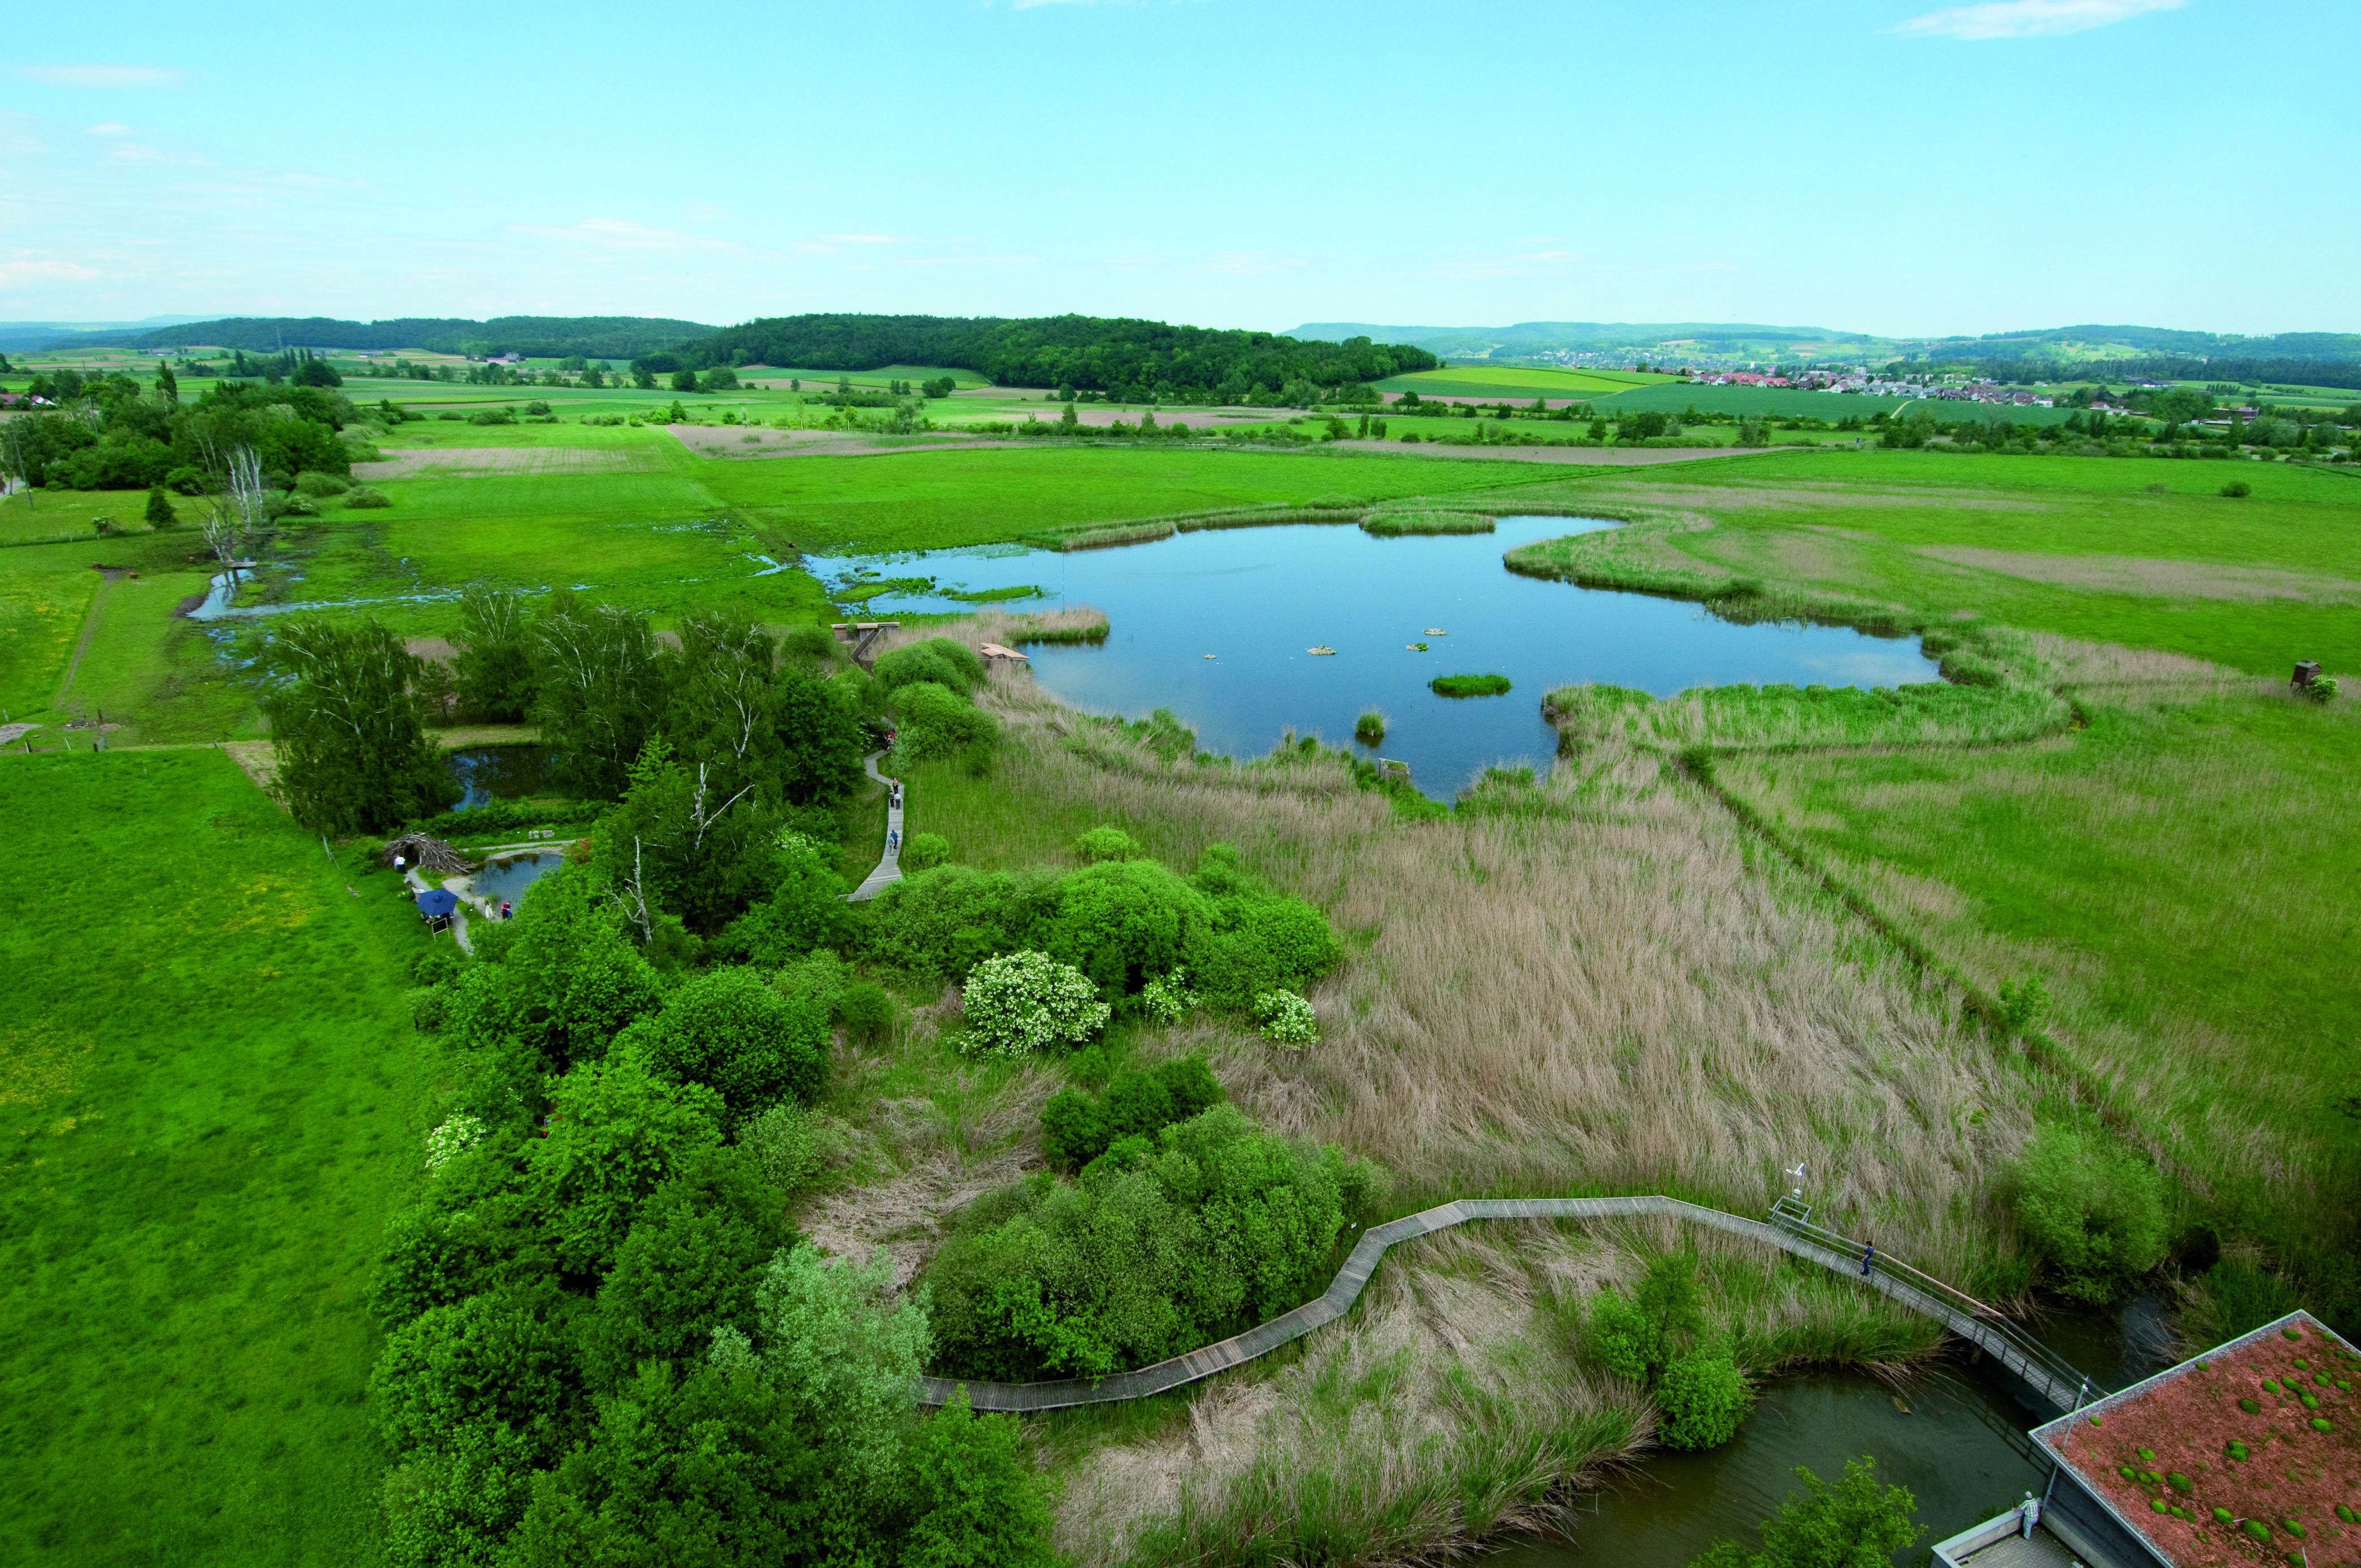 Luftaufnahme des Neeracherrieds mit Naturschutzzentrum, Moorfläche, See, Weihern und Steg durch das Gebiet